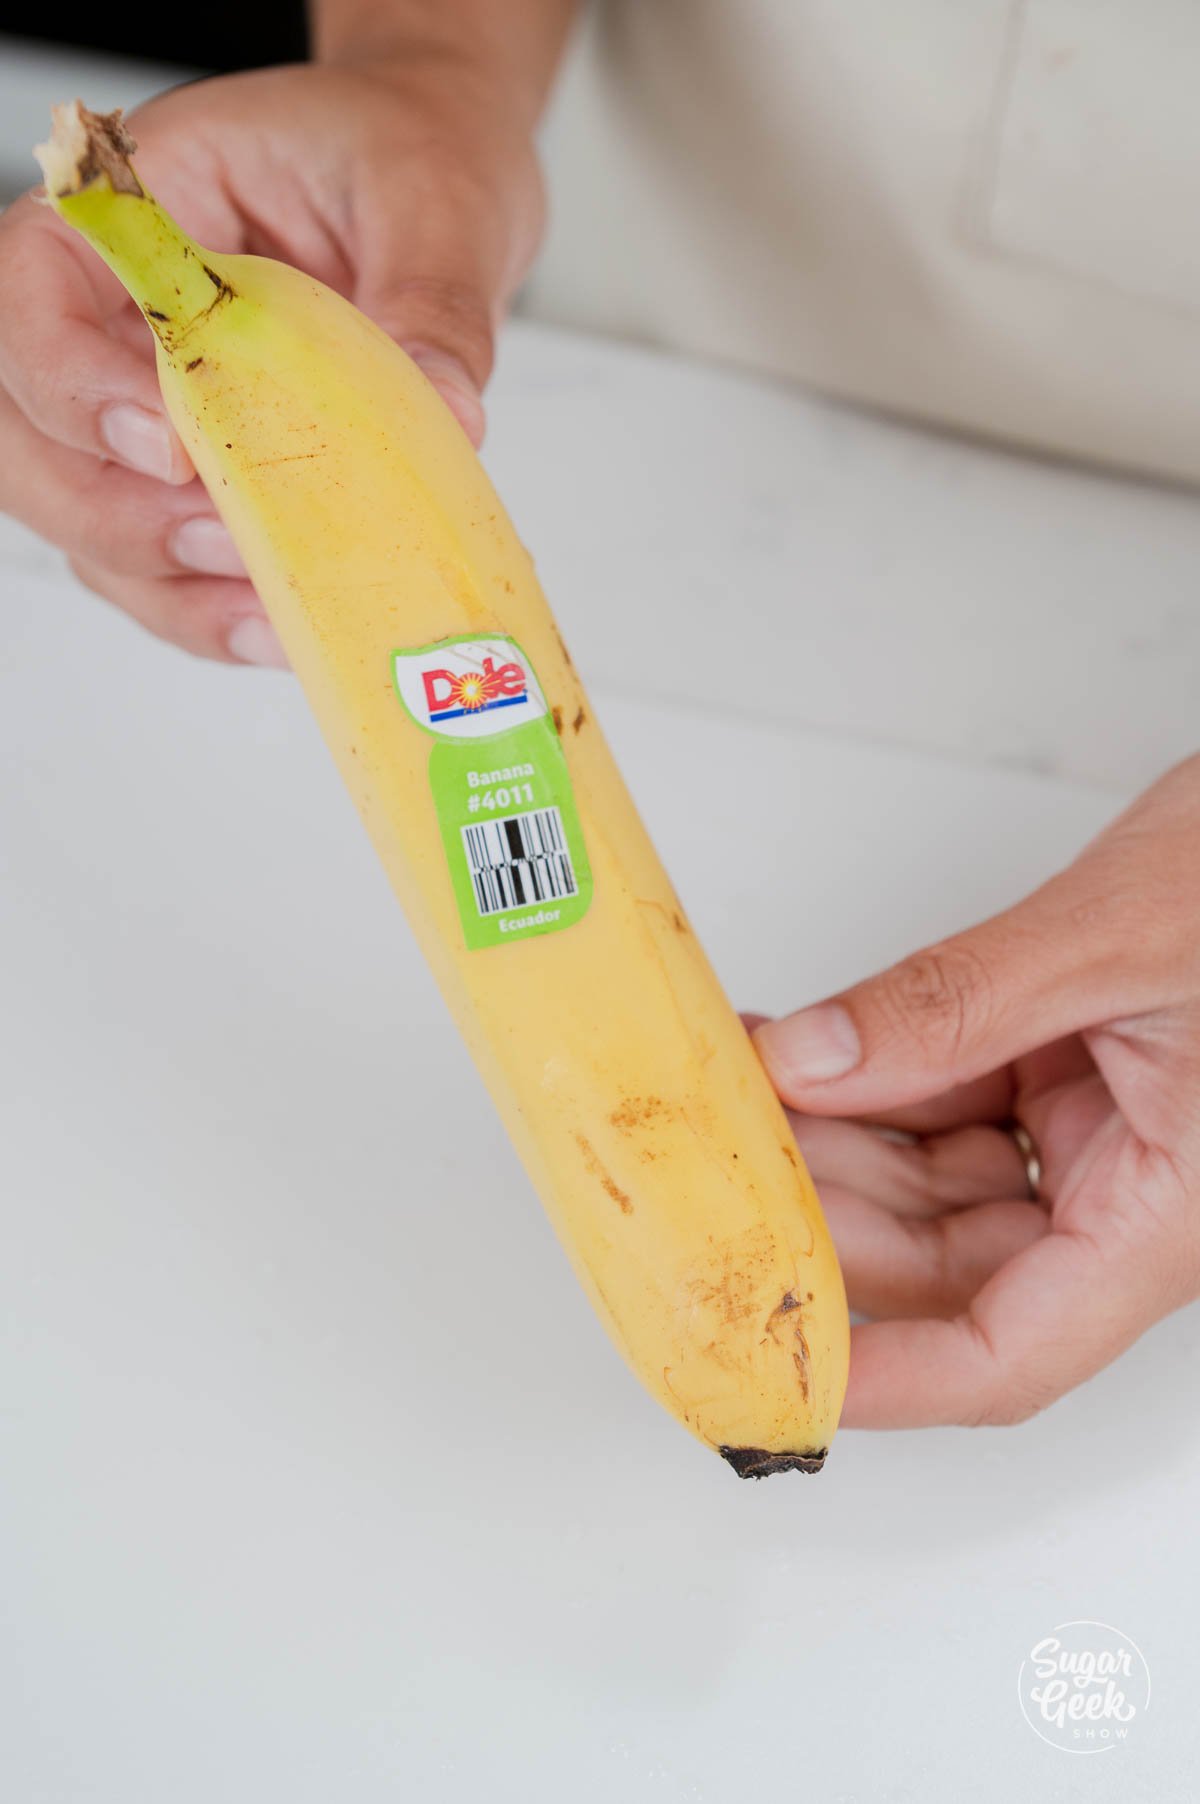 close up of dole banana